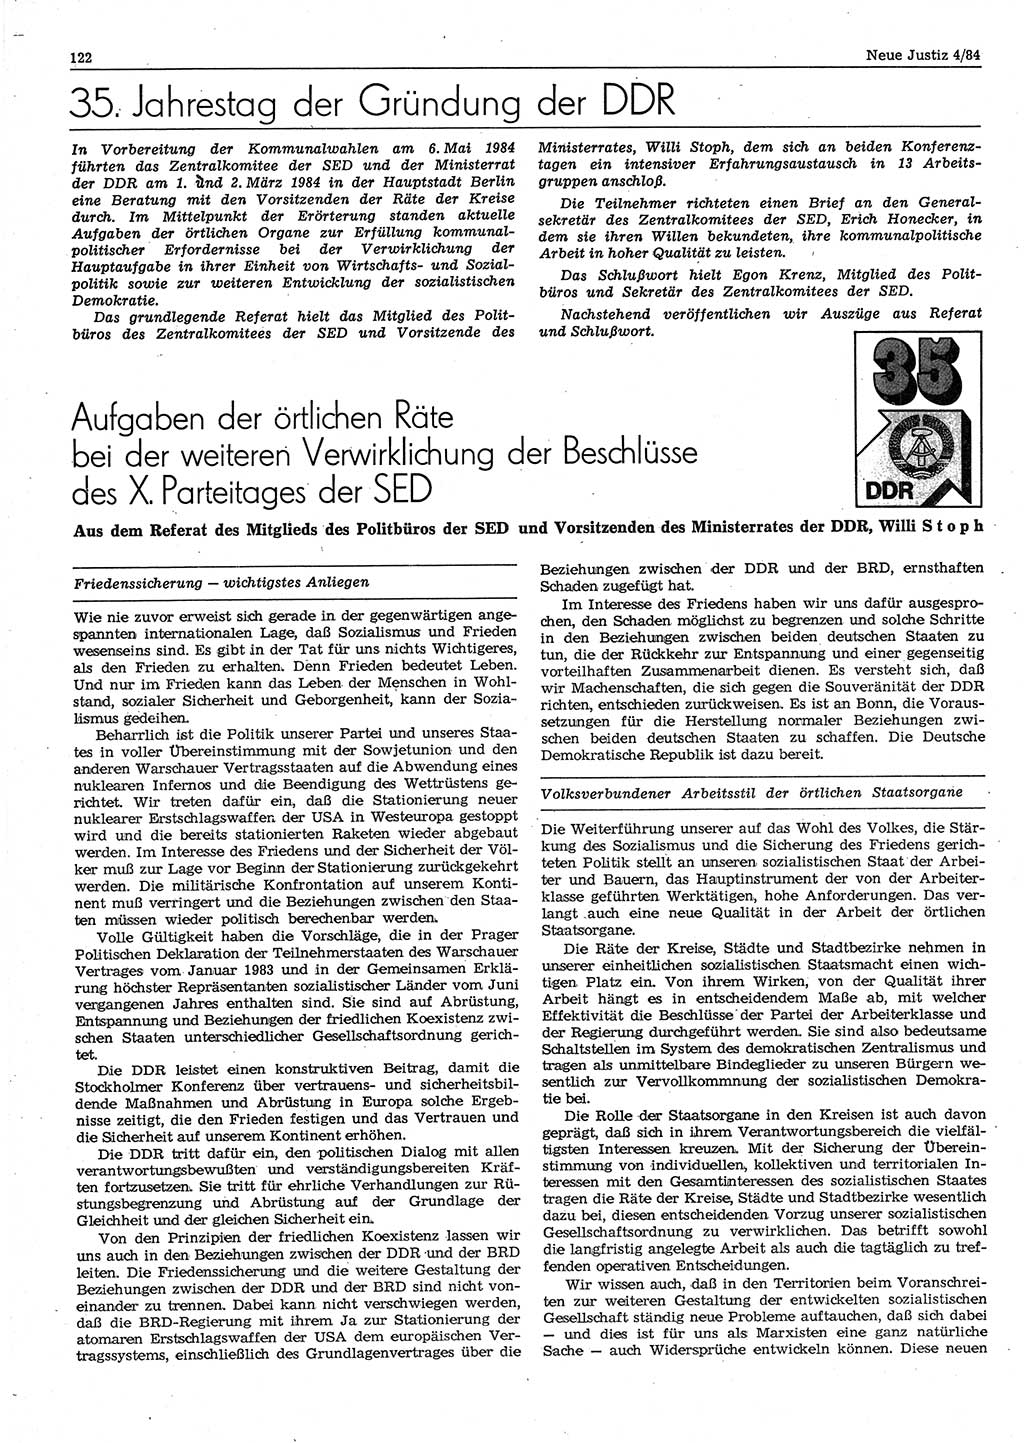 Neue Justiz (NJ), Zeitschrift für sozialistisches Recht und Gesetzlichkeit [Deutsche Demokratische Republik (DDR)], 38. Jahrgang 1984, Seite 122 (NJ DDR 1984, S. 122)